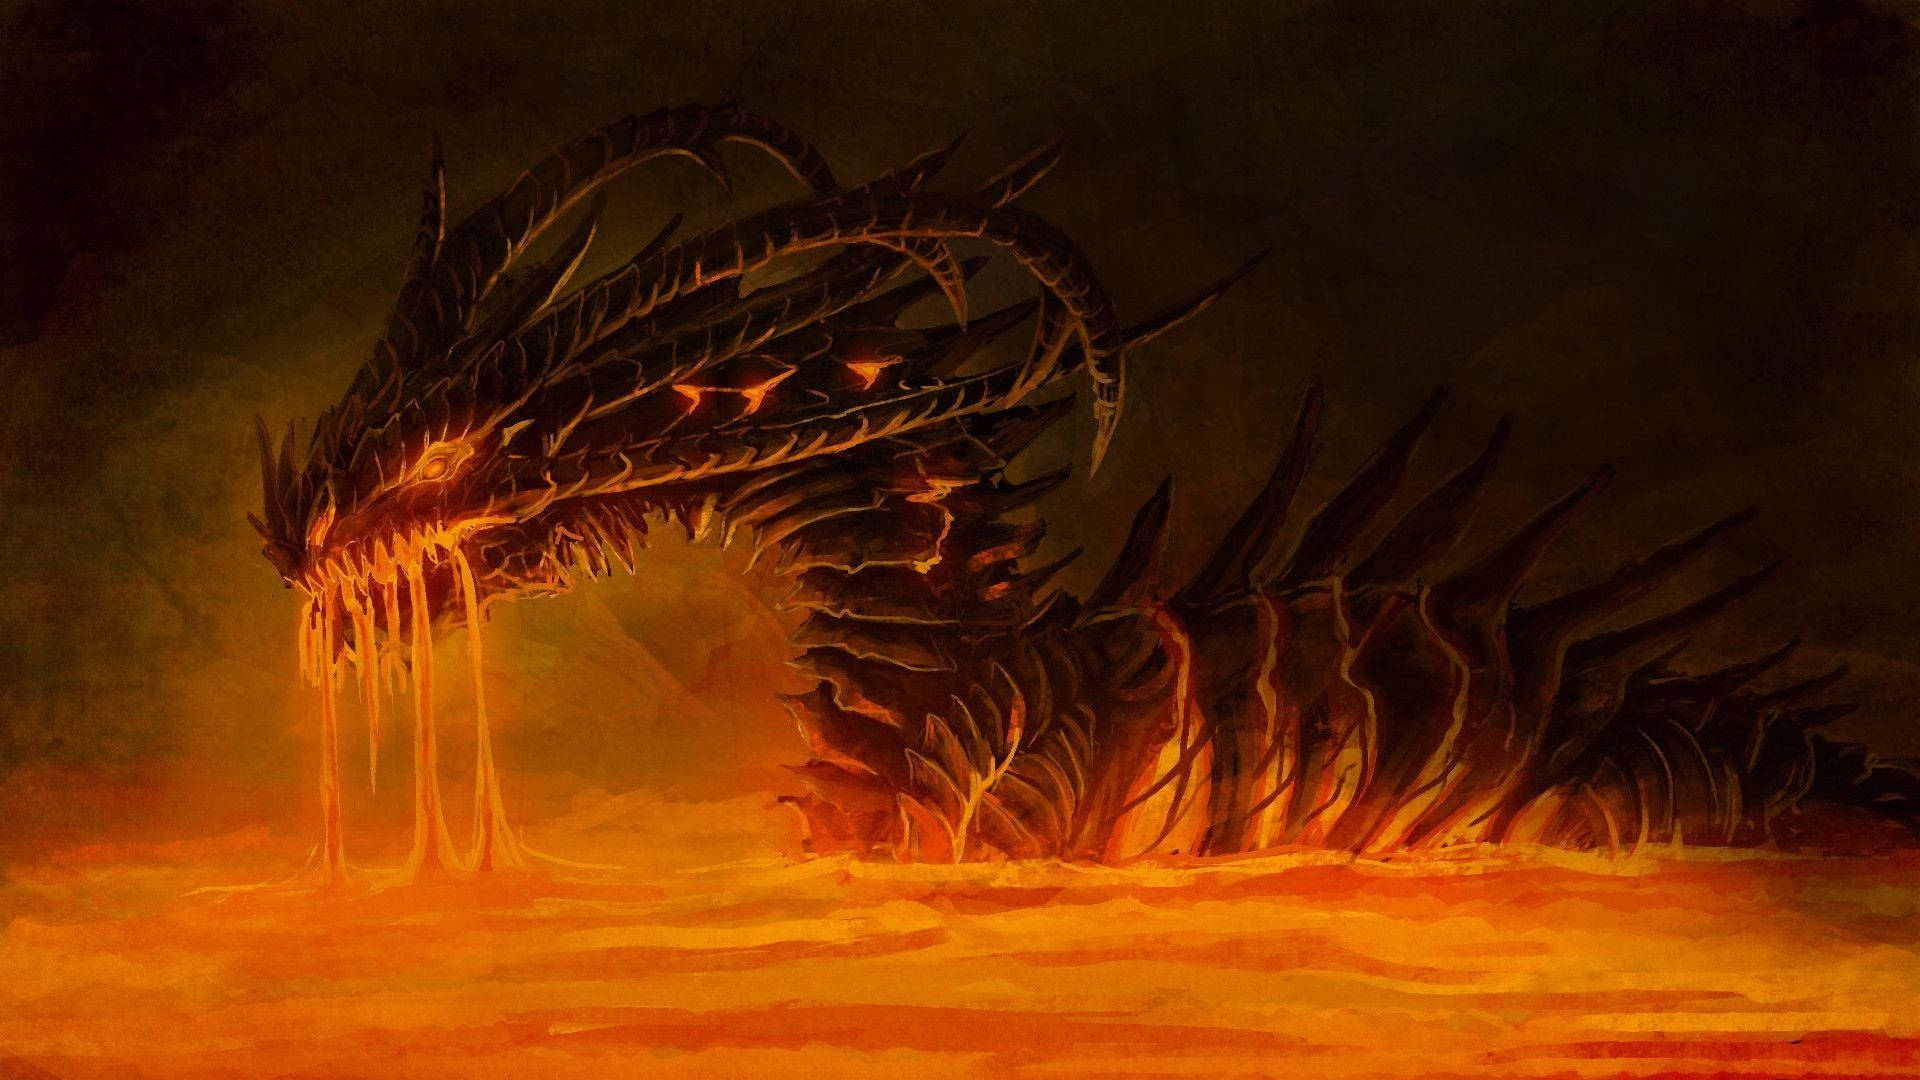 Majestic Fire Dragon Roaring In Flames